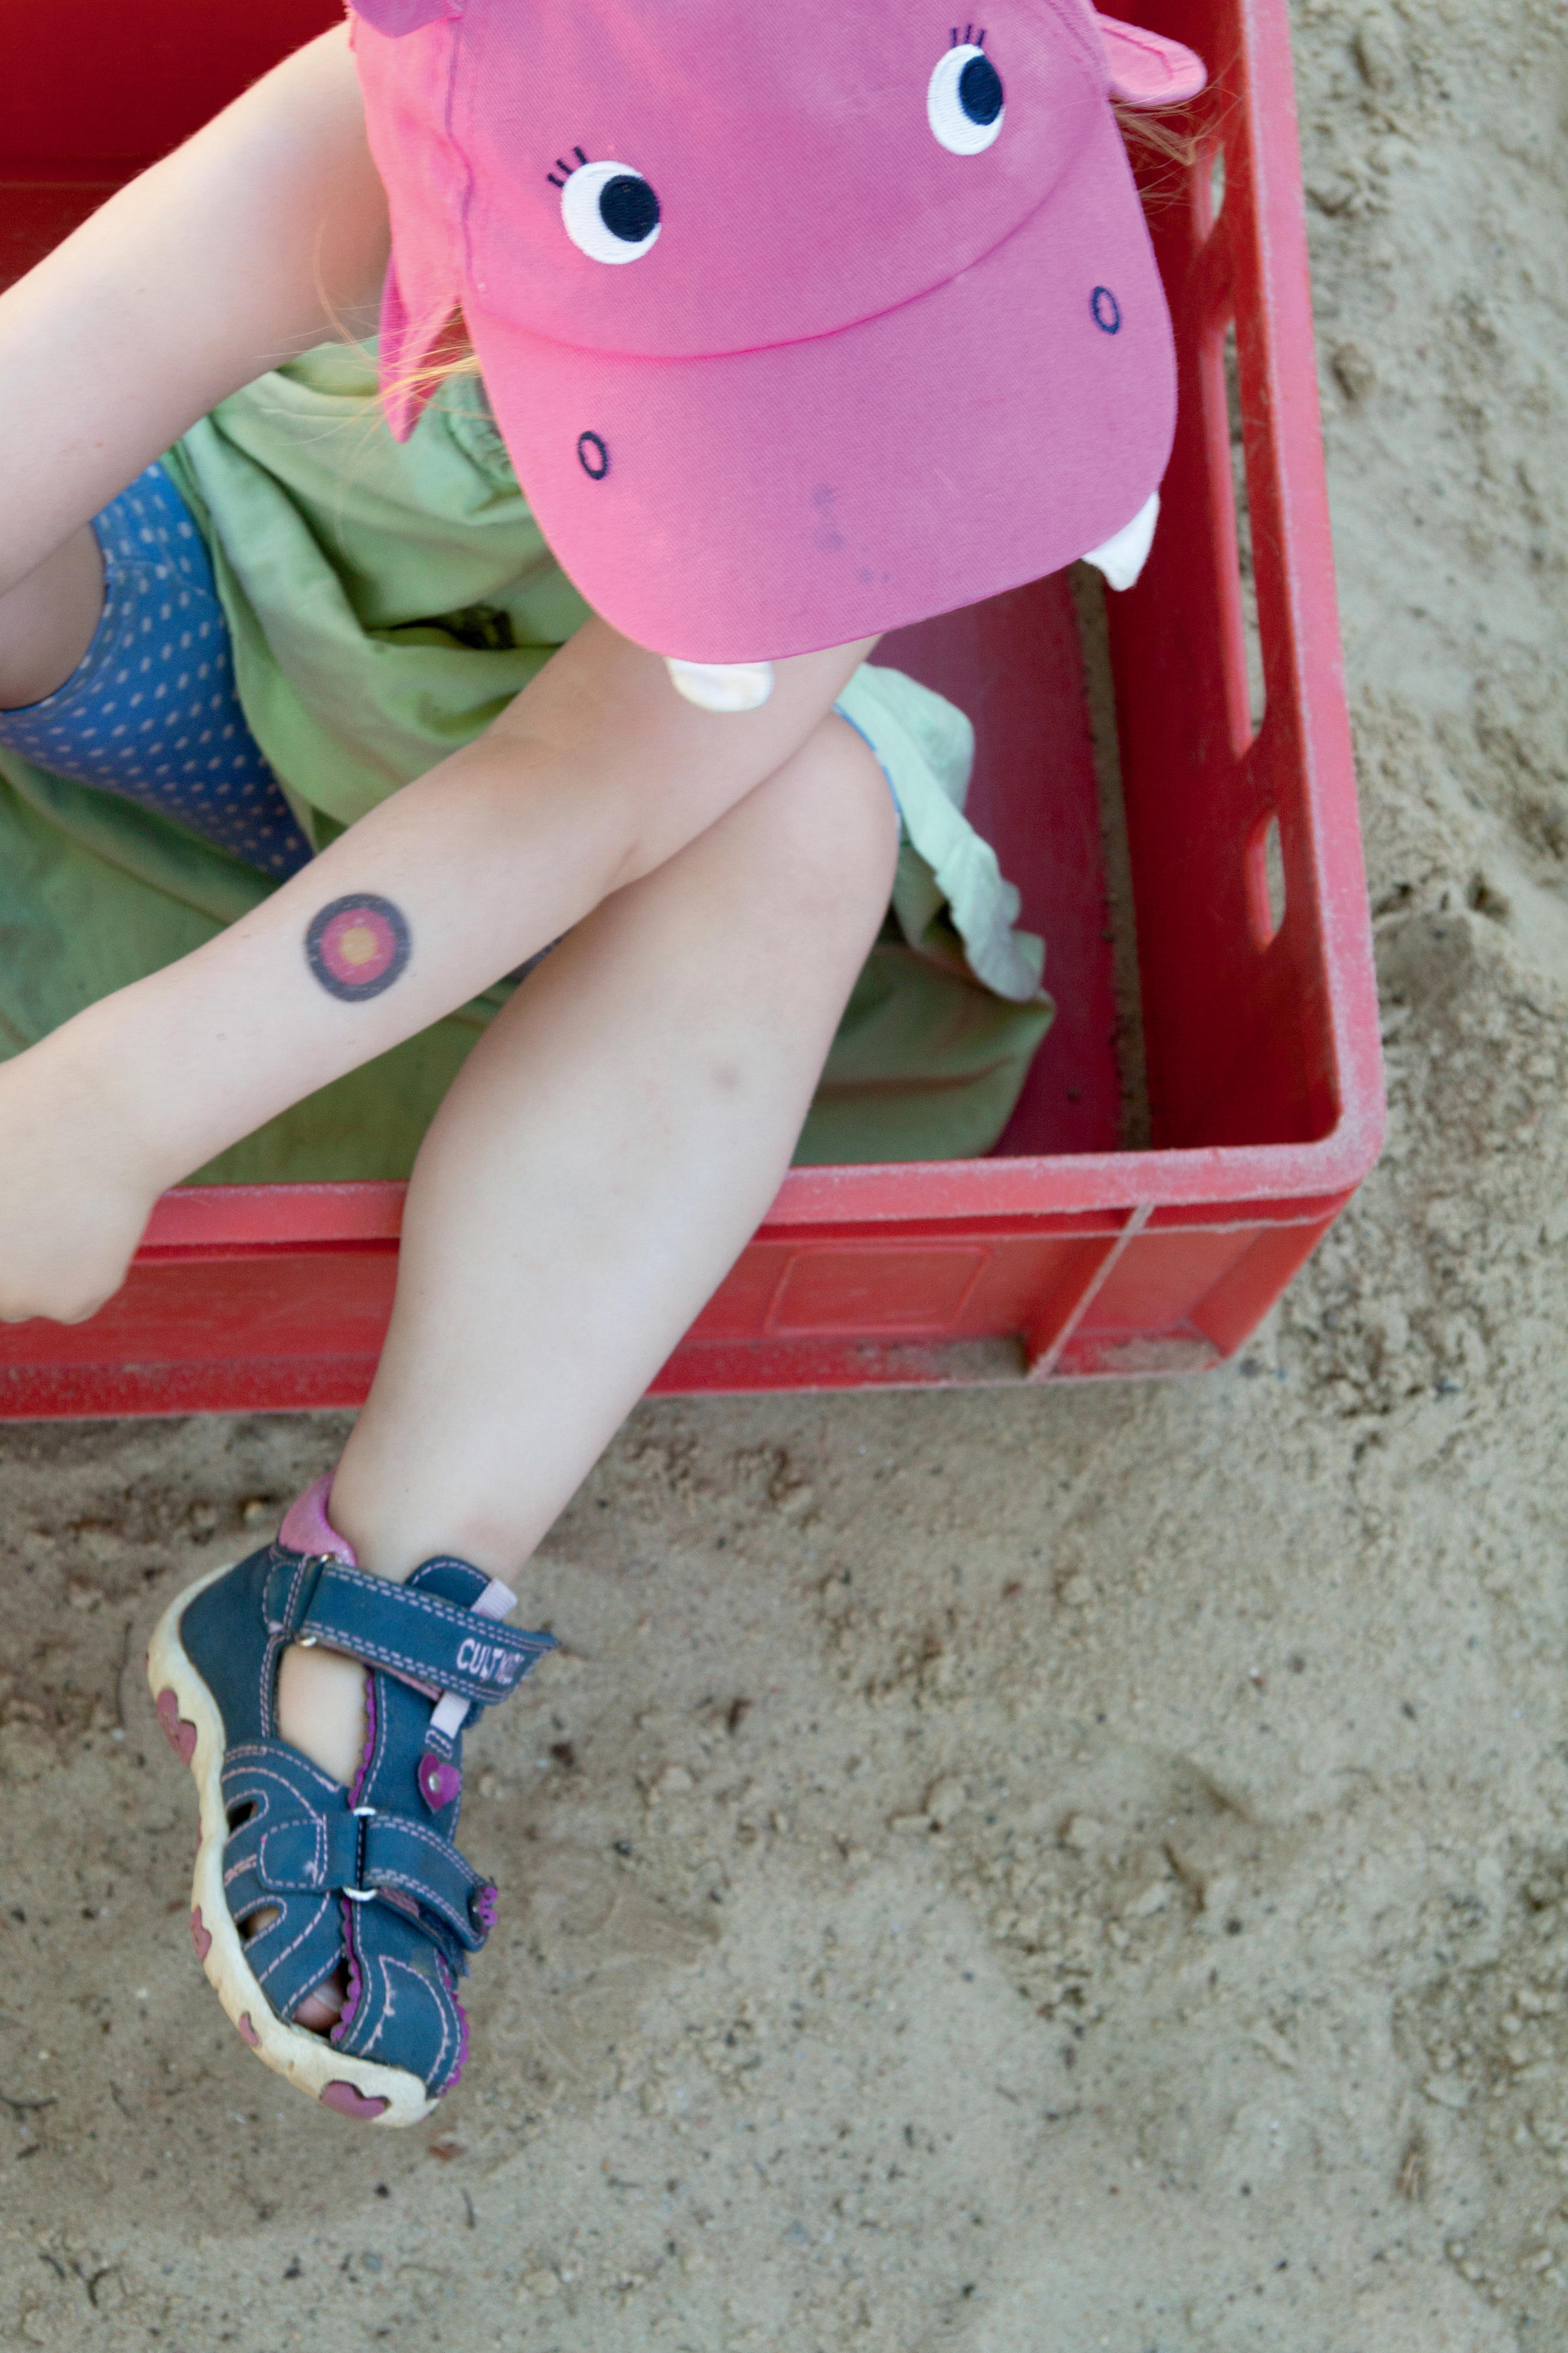 Ein Kind mit einer pinken Mütze sitzt in einer roten Kiste auf einer Sandfläche.